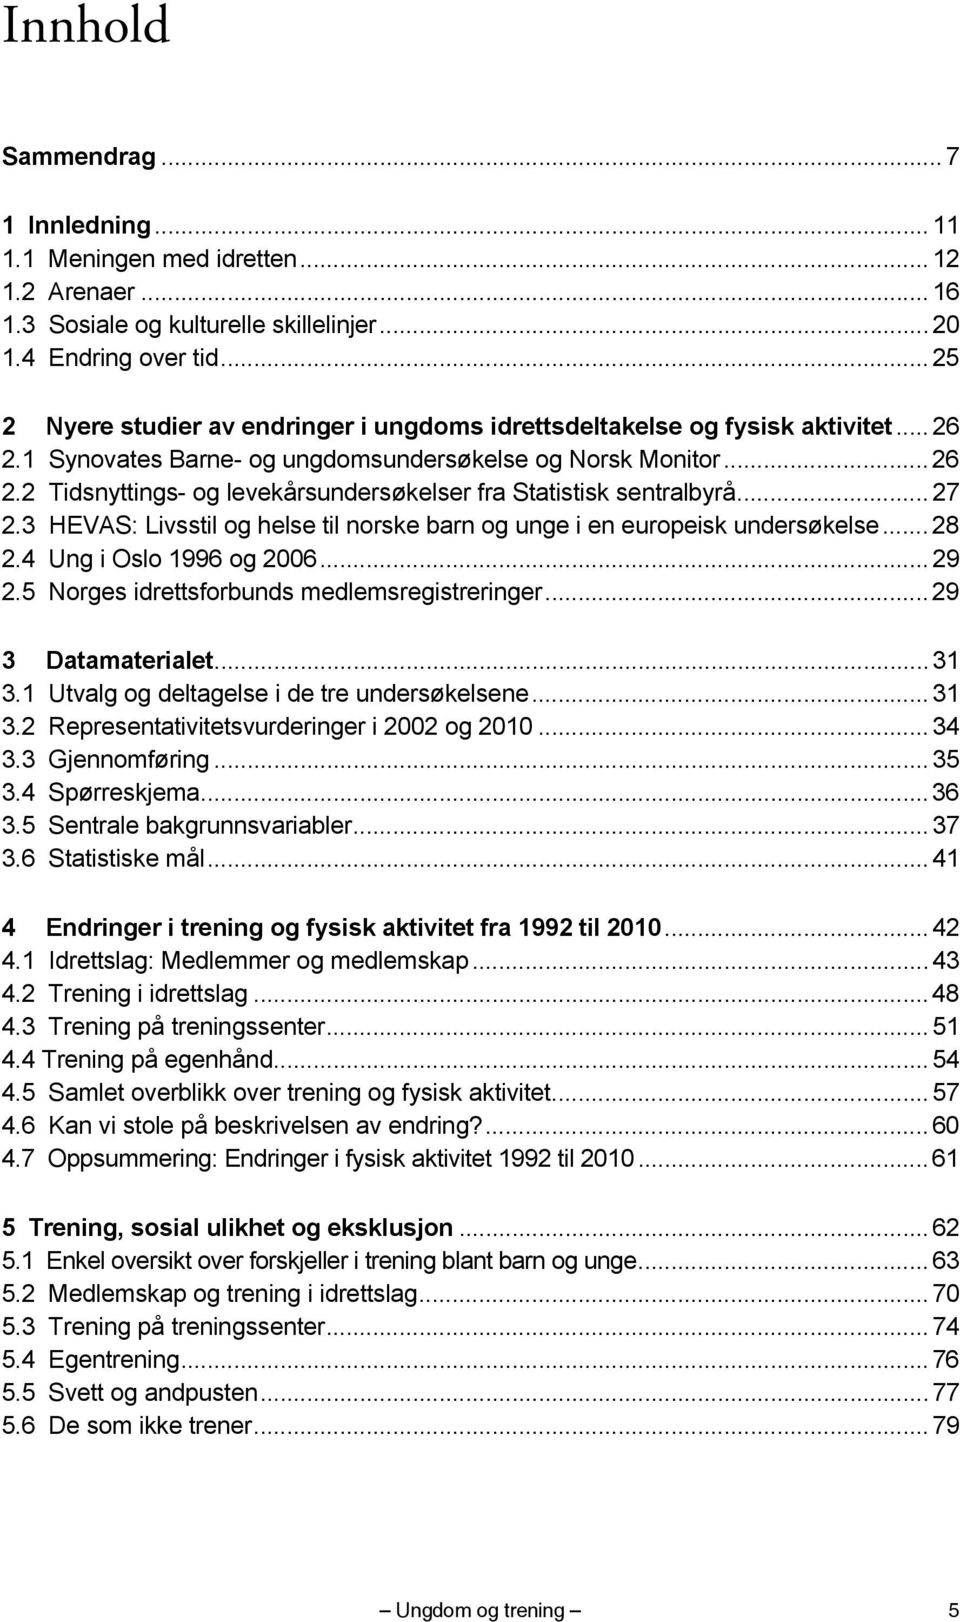 .. 27 2.3 HEVAS: Livsstil og helse til norske barn og unge i en europeisk undersøkelse... 28 2.4 Ung i Oslo 1996 og 2006... 29 2.5 Norges idrettsforbunds medlemsregistreringer... 29 3 Datamaterialet.